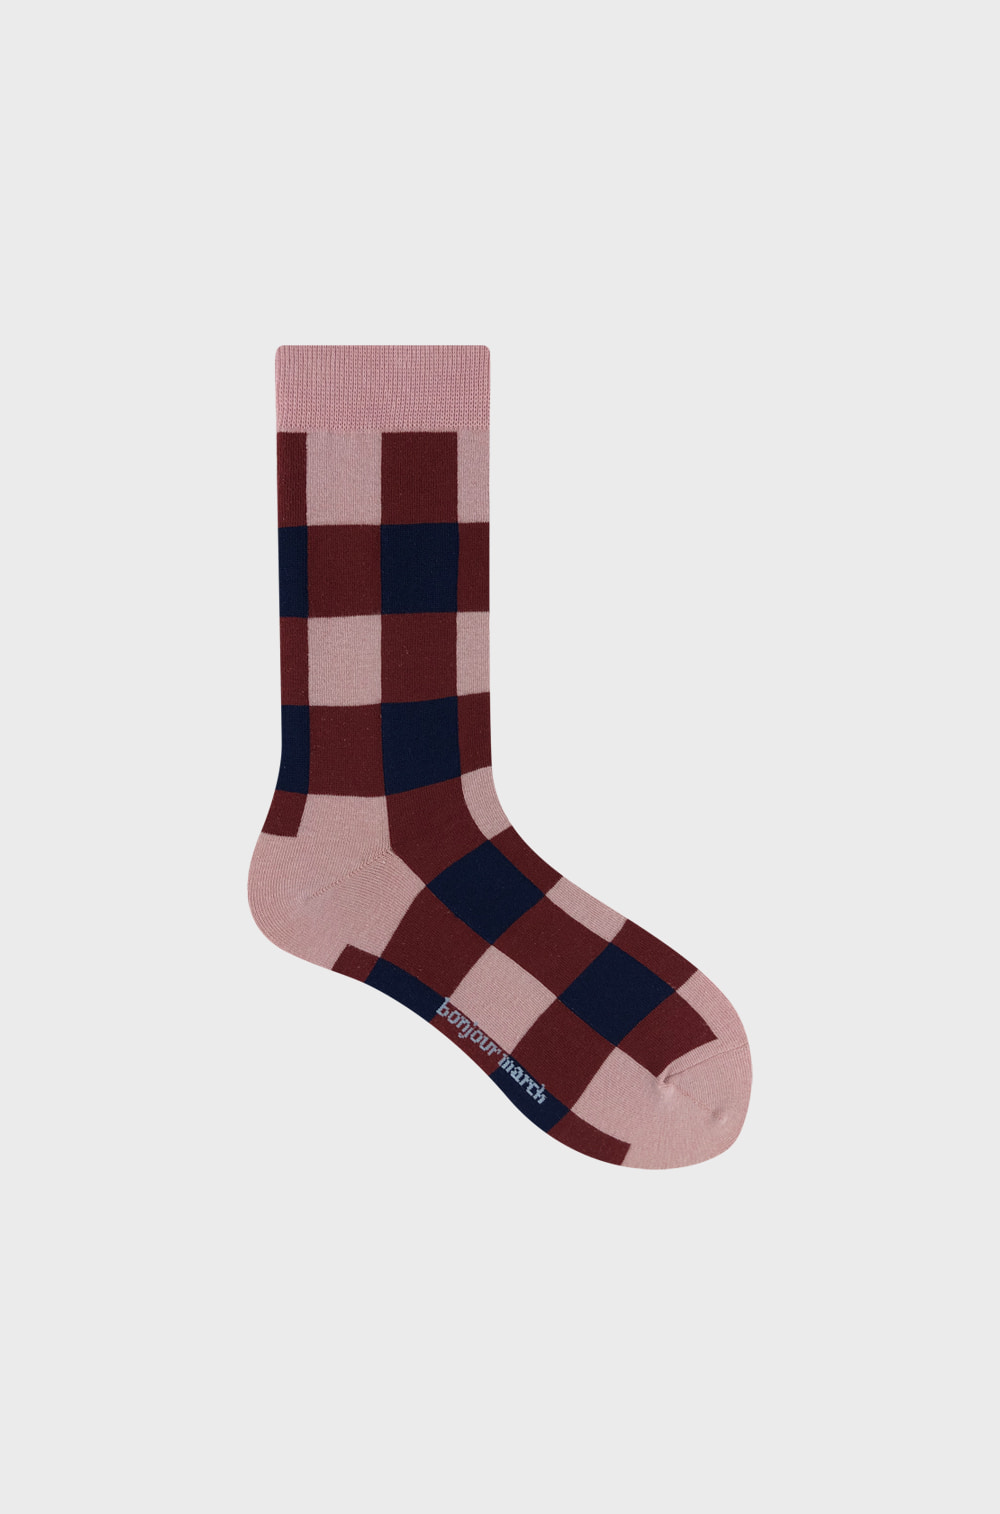 Bulky check socks